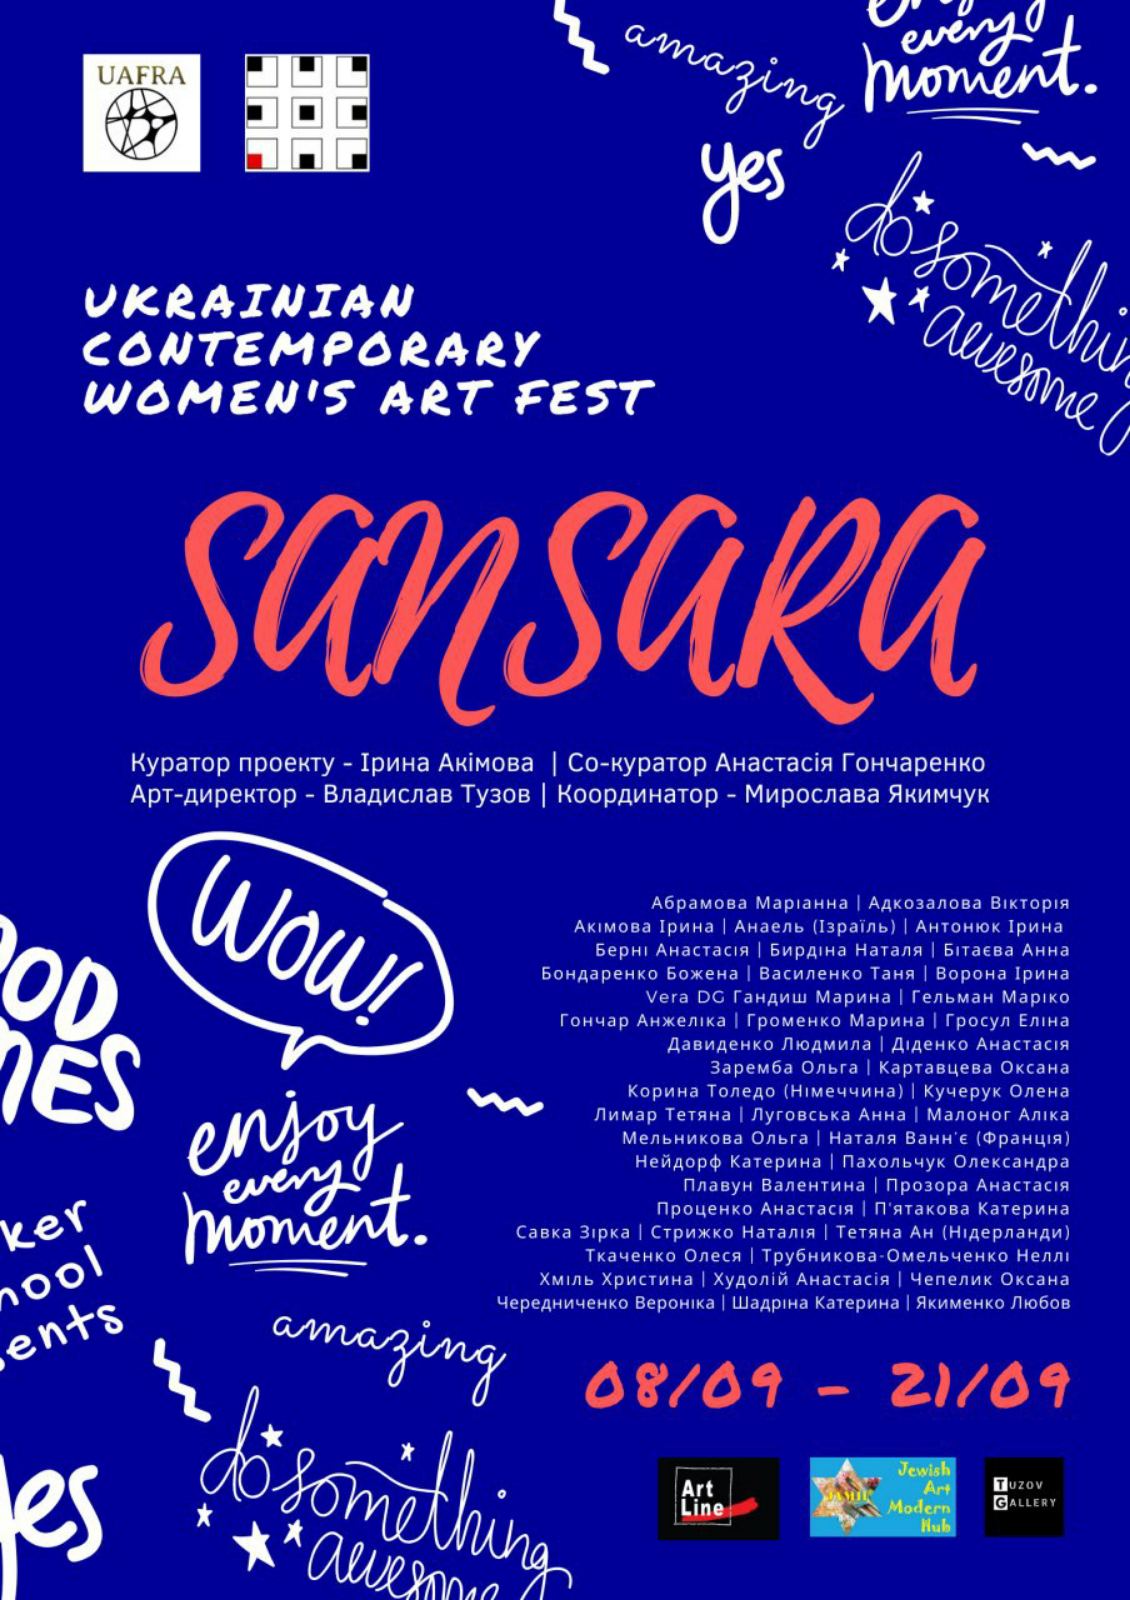  ТРЕТИЙ ВСЕУКРАИНСКИЙ АРТ-ФЕСТИВАЛЬ СОВРЕМЕННОГО ЖЕНСКОГО ИСКУССТВА (UKRAINIAN CONTEMPORARY WOMEN'S ART FEST 2020) 